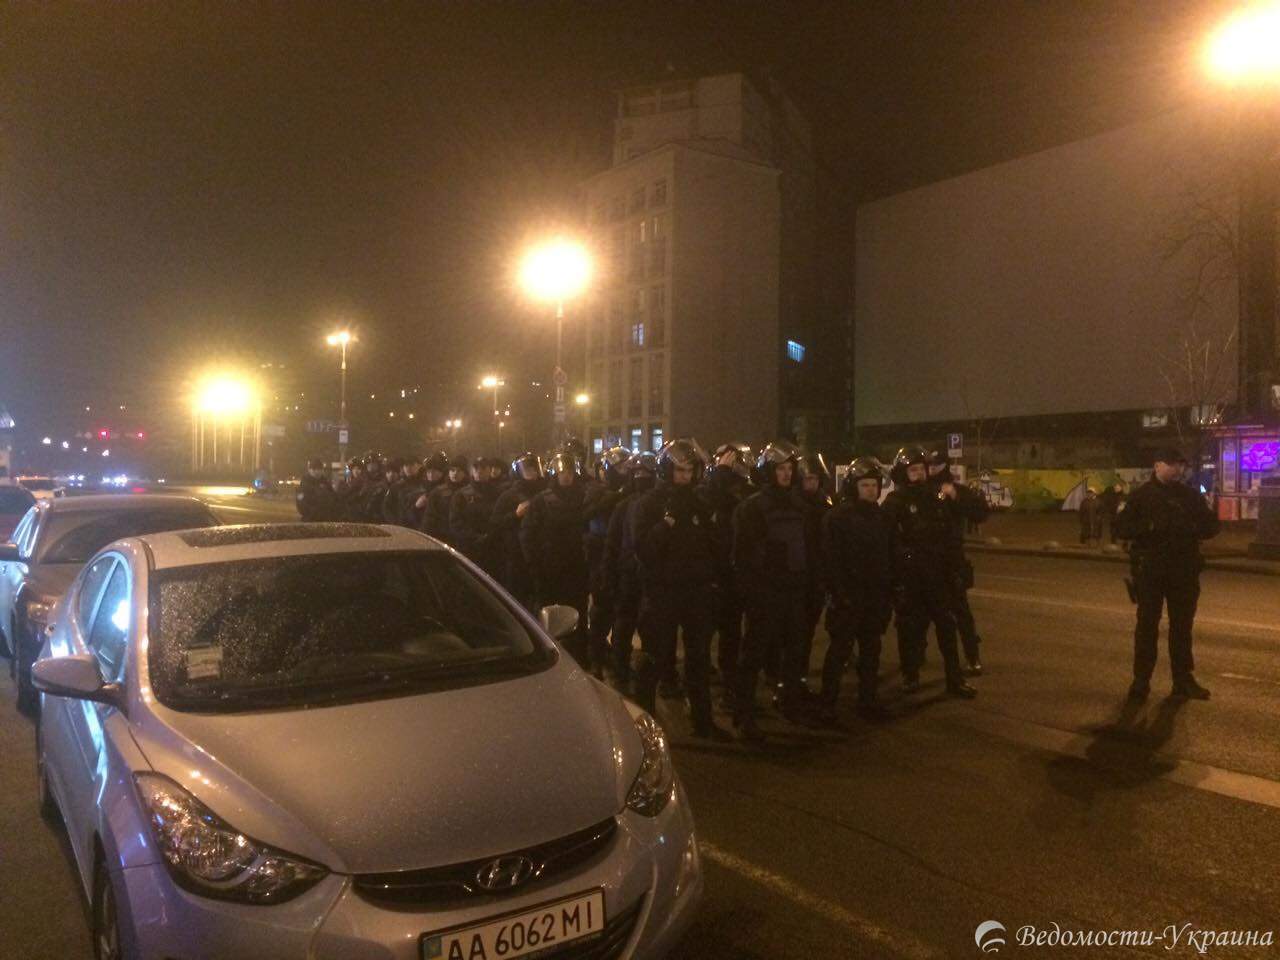 Силовики оттесняют пикетчиков, которые пытаются пробиться к зданию "Альфа банка" в Киеве (видео)